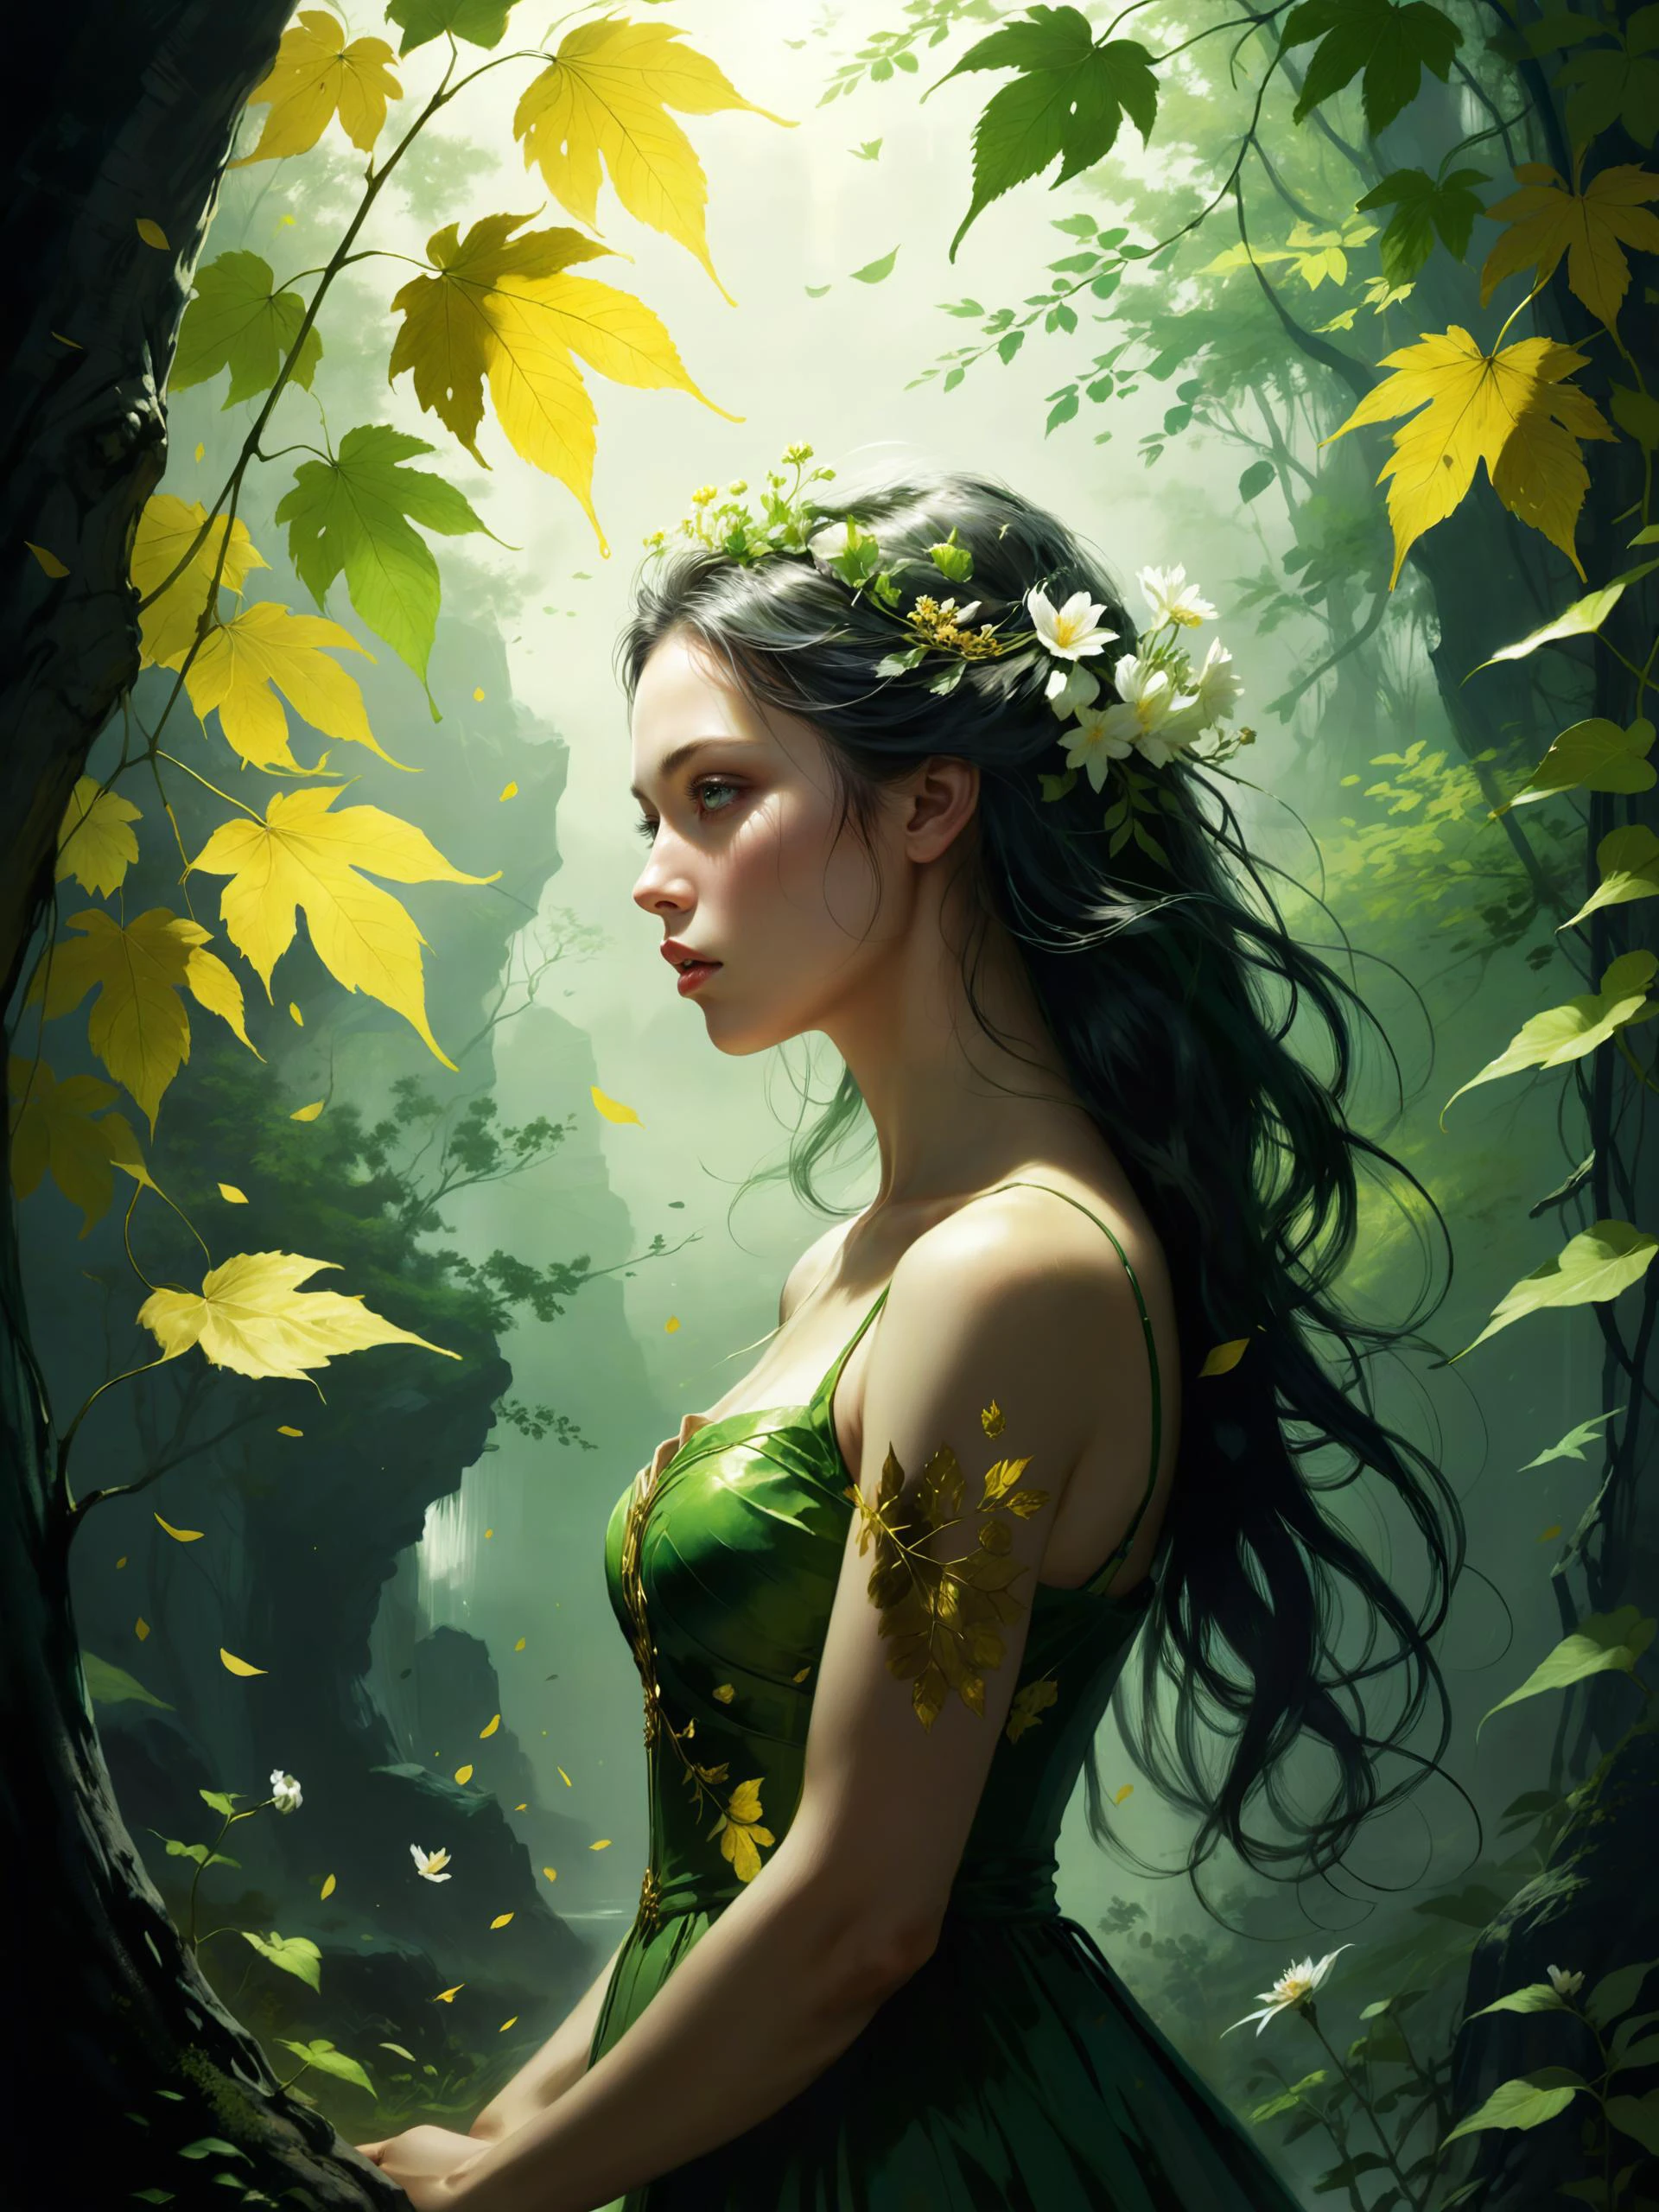 大自然的第一抹绿色是金色, 她最难保持的色调, 她的初叶是一朵花, 但只有一个小时, 然后叶子落到叶子上, 于是伊甸园陷入悲痛之中, 所以黎明落下, 黄金无法永存, 斑驳的光, 著名艺术作品 (约翰·克里斯蒂安·达尔:1.4) 和 (李珉载:1.4)